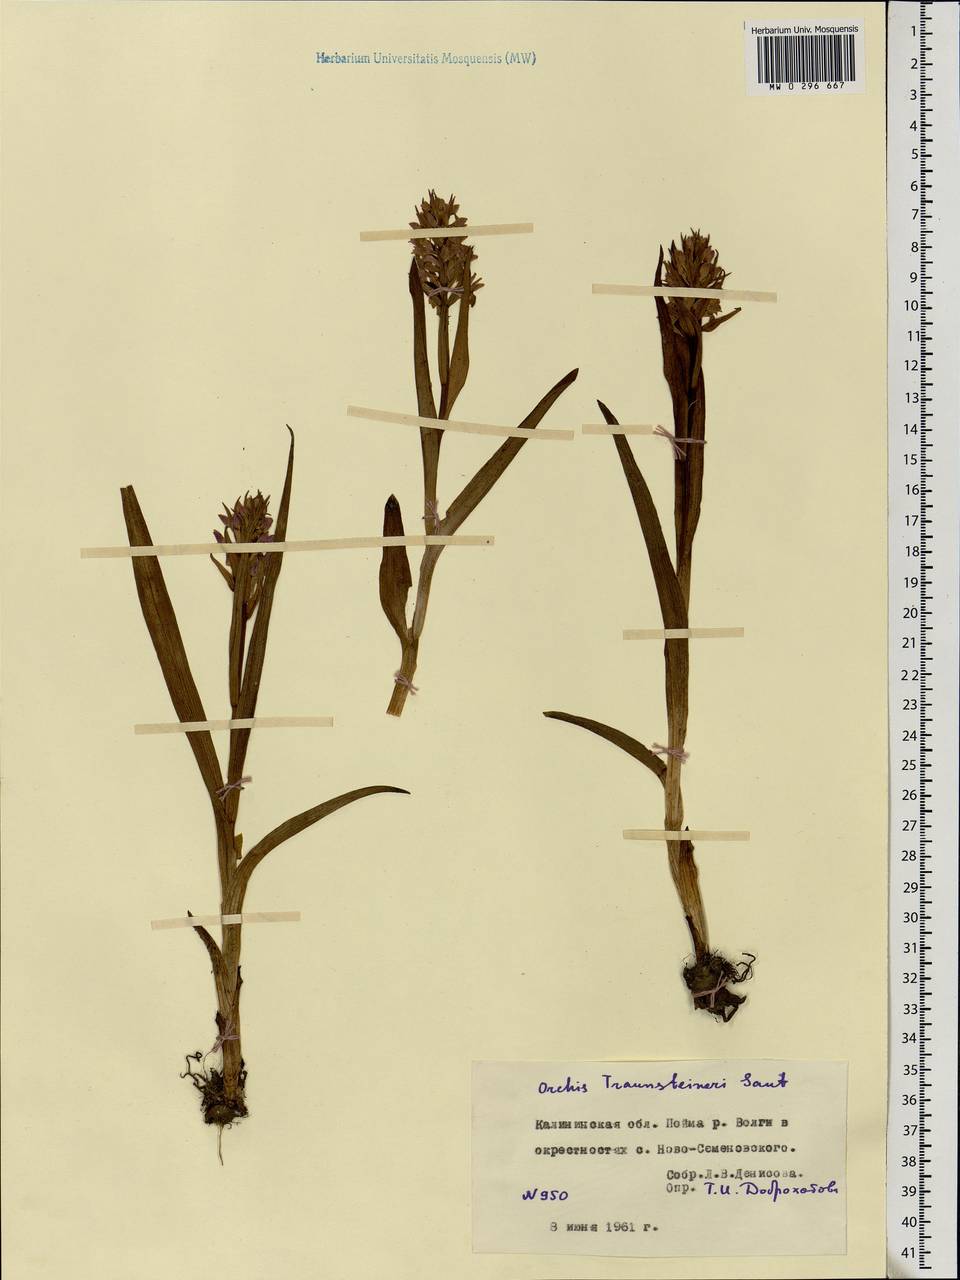 Dactylorhiza majalis subsp. lapponica (Laest. ex Hartm.) H.Sund., Восточная Европа, Северо-Западный район (E2) (Россия)